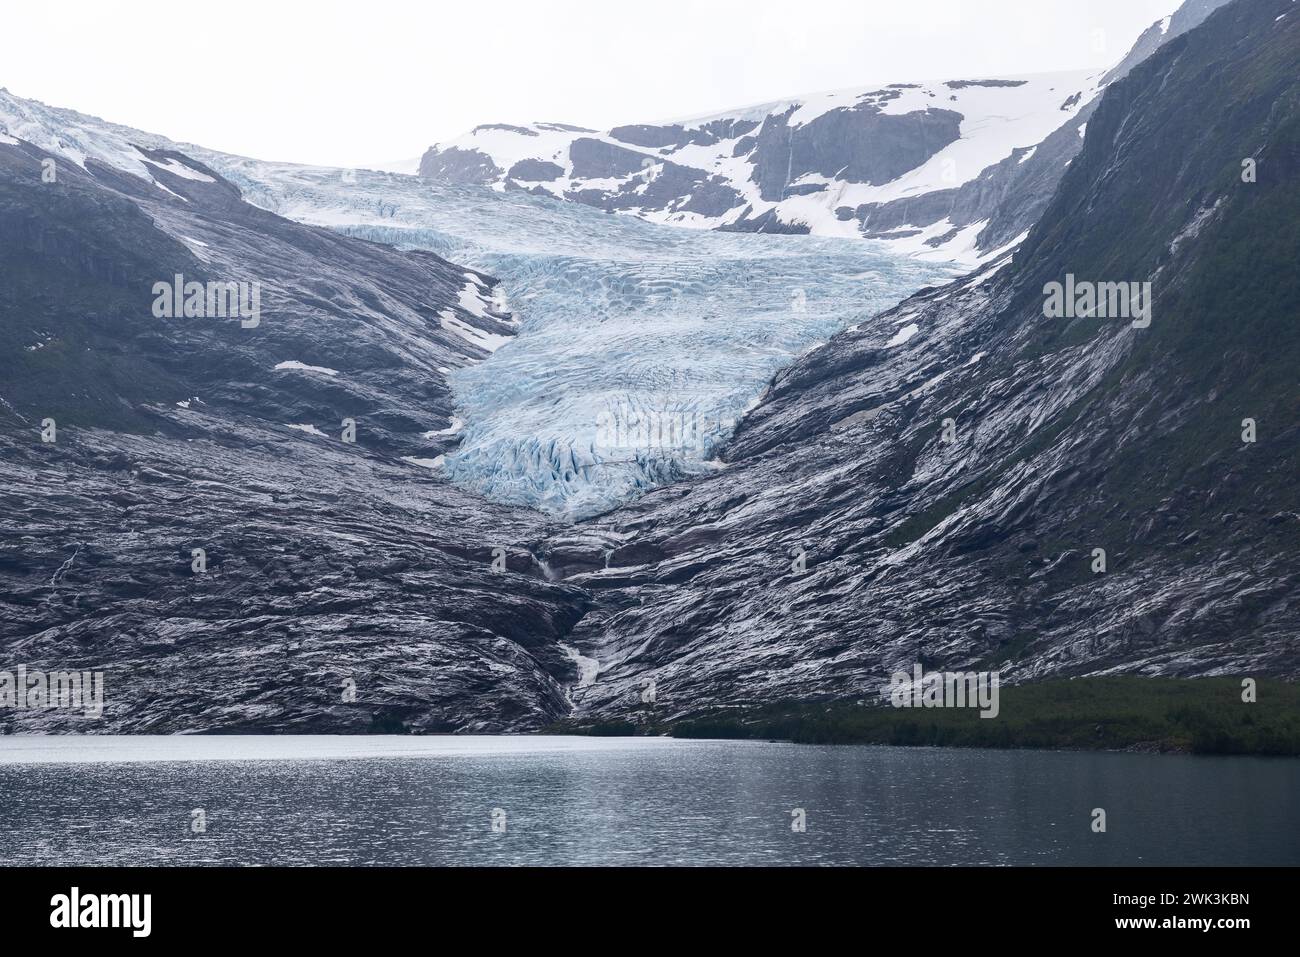 Ein ruhiger See am Fuße des Svartisen-Gletschers, der das schwindende Licht inmitten der rauen Schönheit der arktischen Wildnis reflektiert Stockfoto